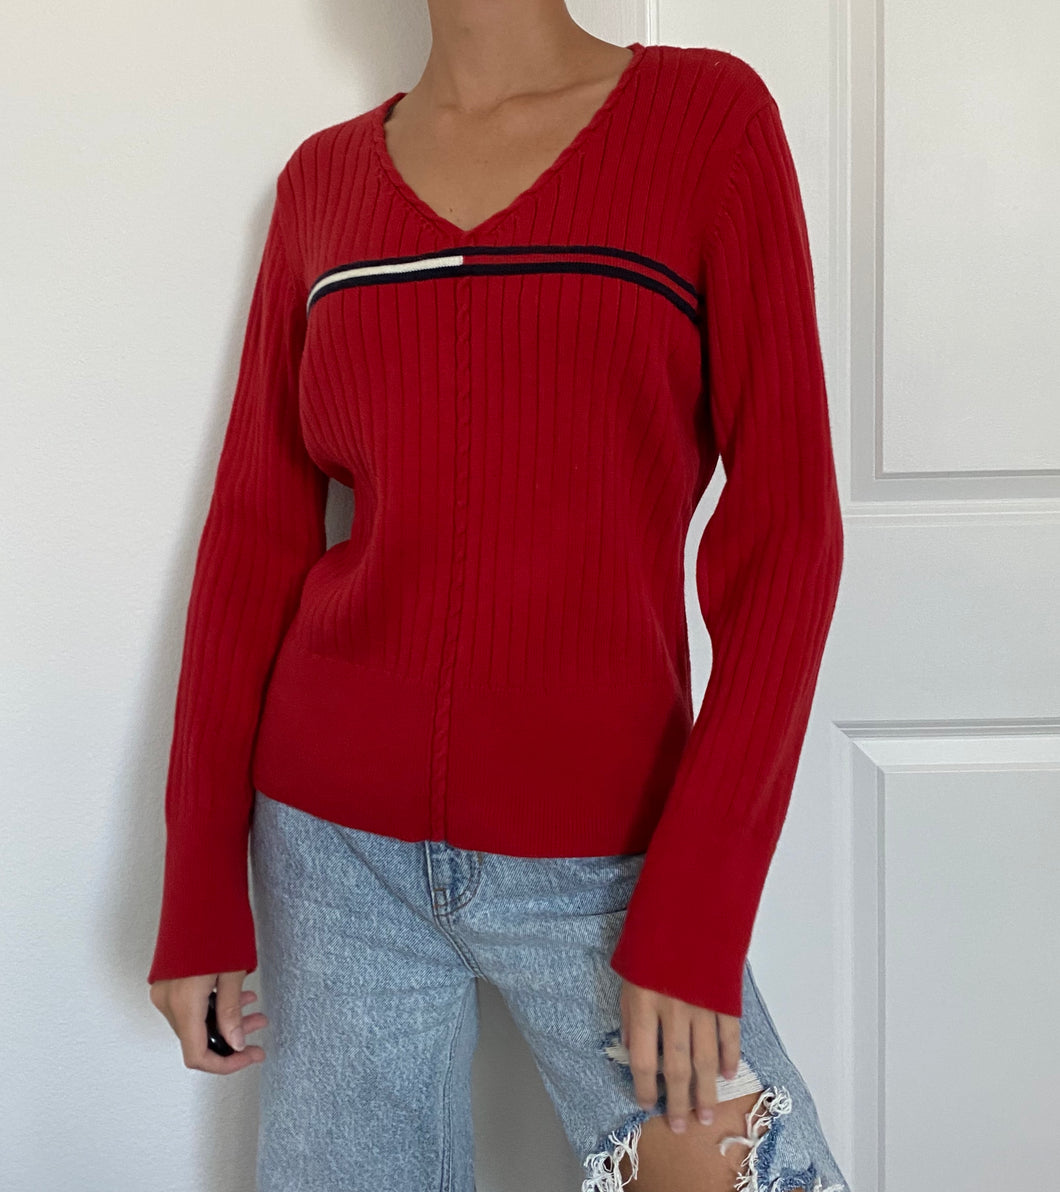 Vintage Tommy Hilfiger Sweater